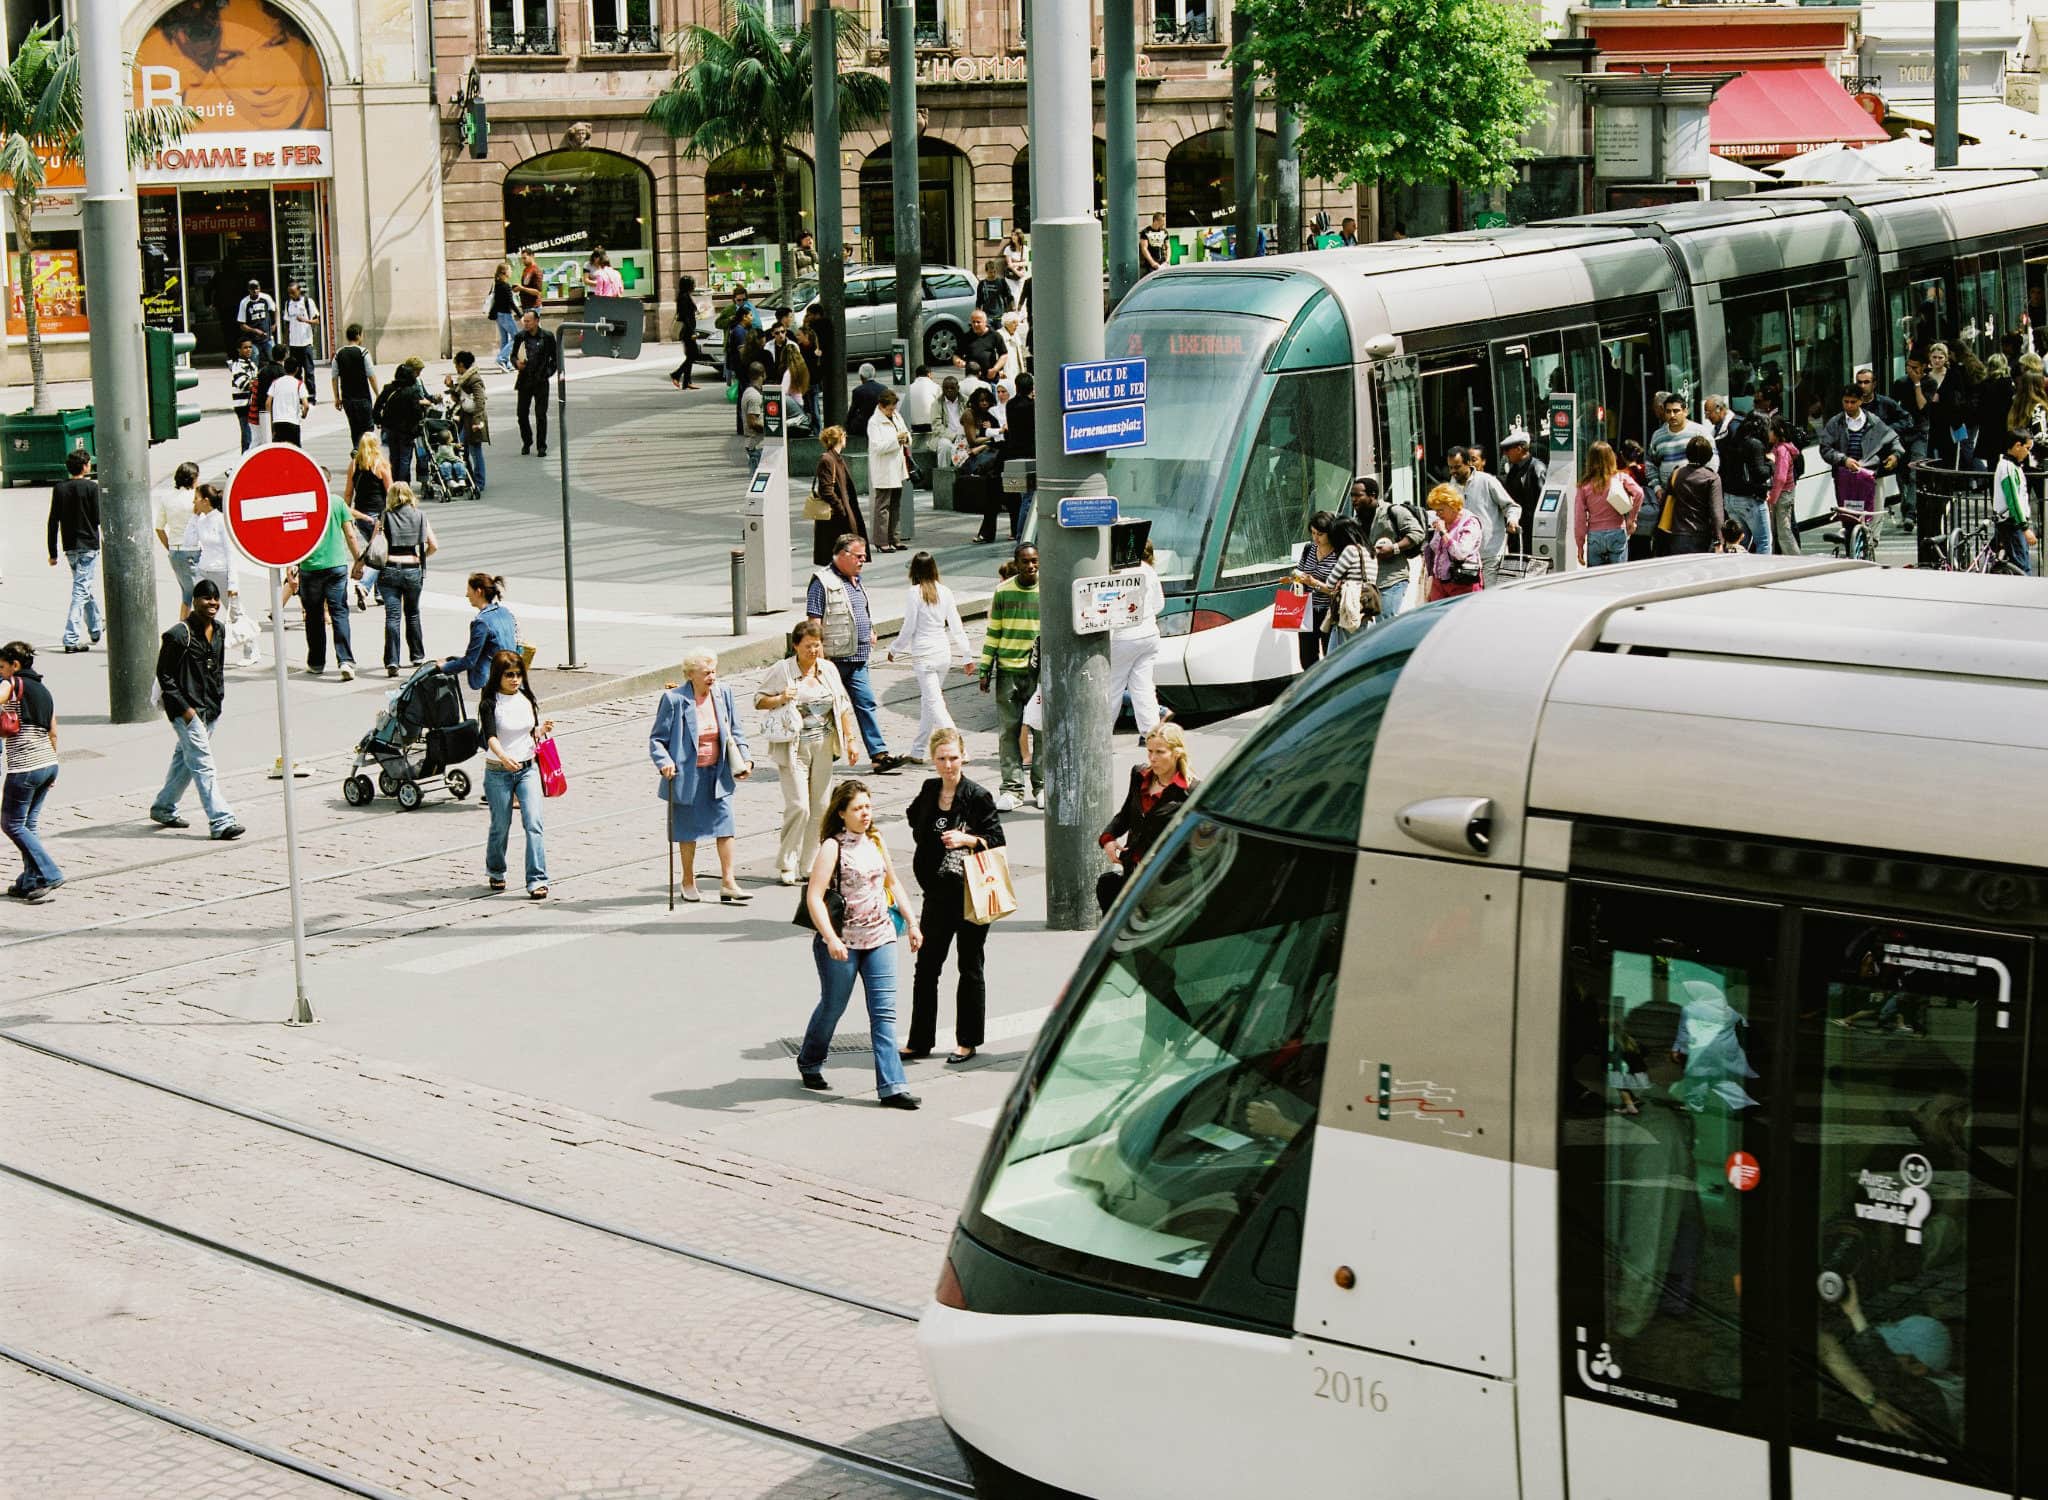 La gratuité entraînerait-elle un afflux ingérable sur les lignes de tram ? (photo Pascal Bastien / Divergence)